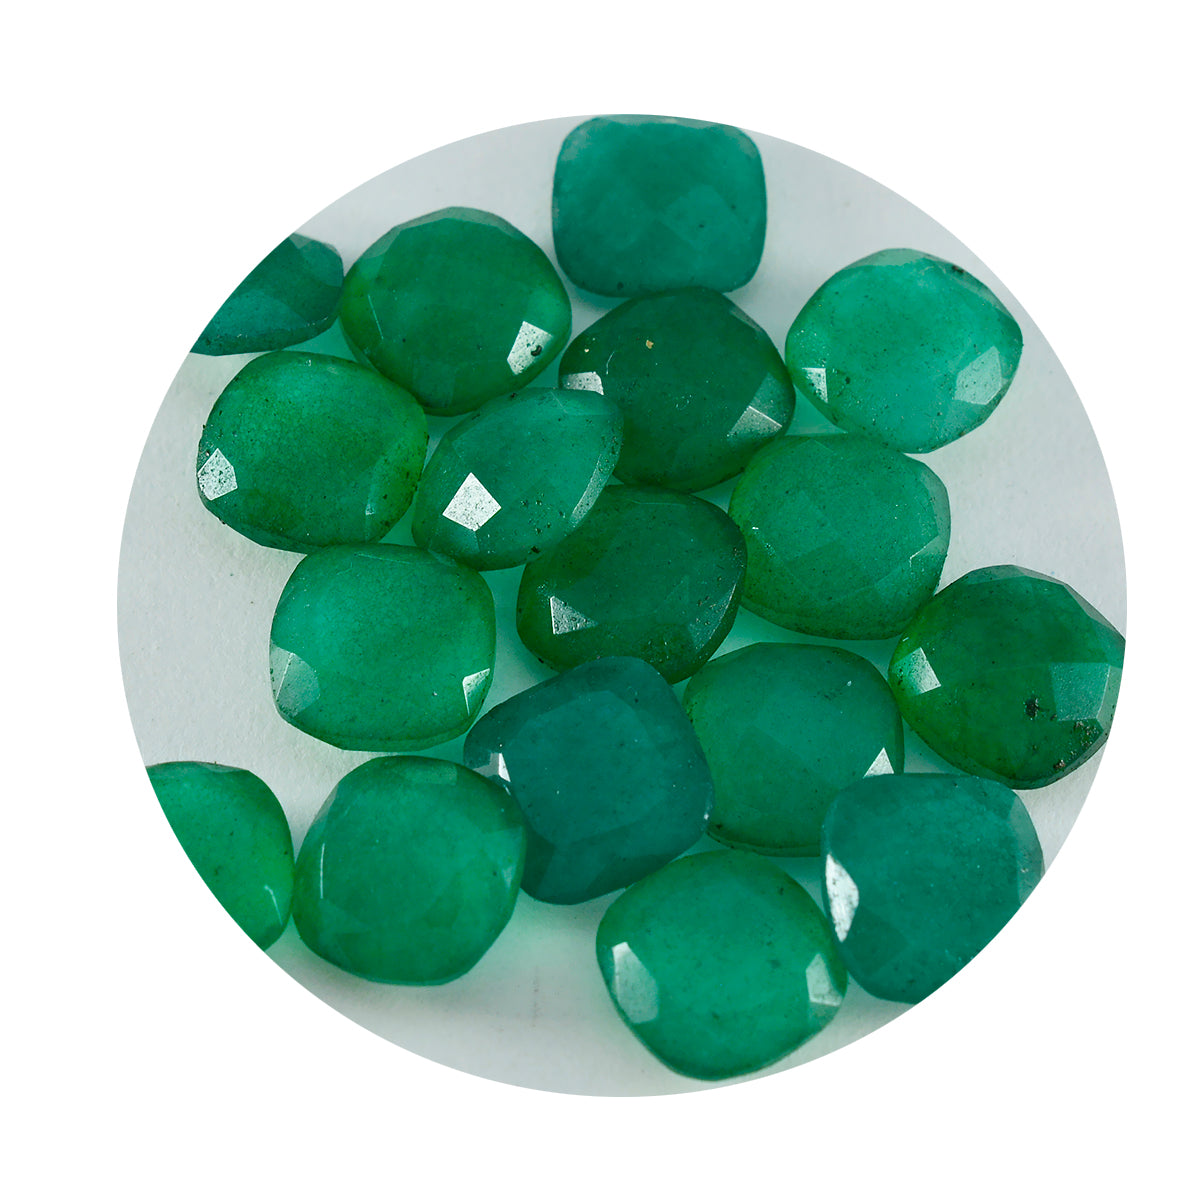 Riyogems 1PC echte groene jaspis gefacetteerd 4x4 mm kussenvorm A1 kwaliteit losse edelstenen